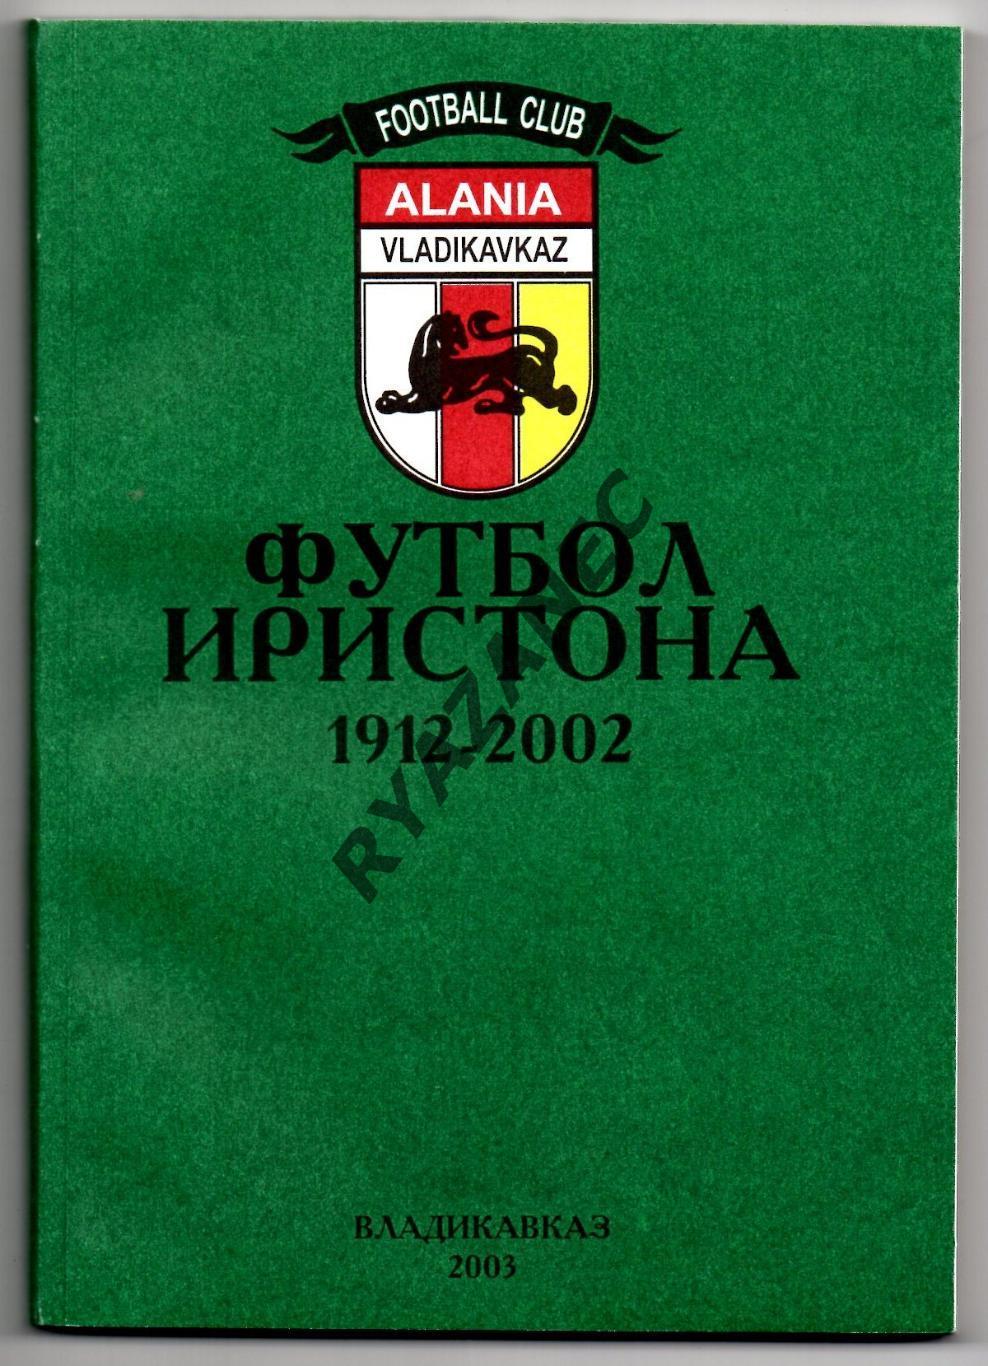 Тедеев В., Тотоонти И. Футбол Иристона 1912-2002. Владикавказ, 2003г. 200 стр.